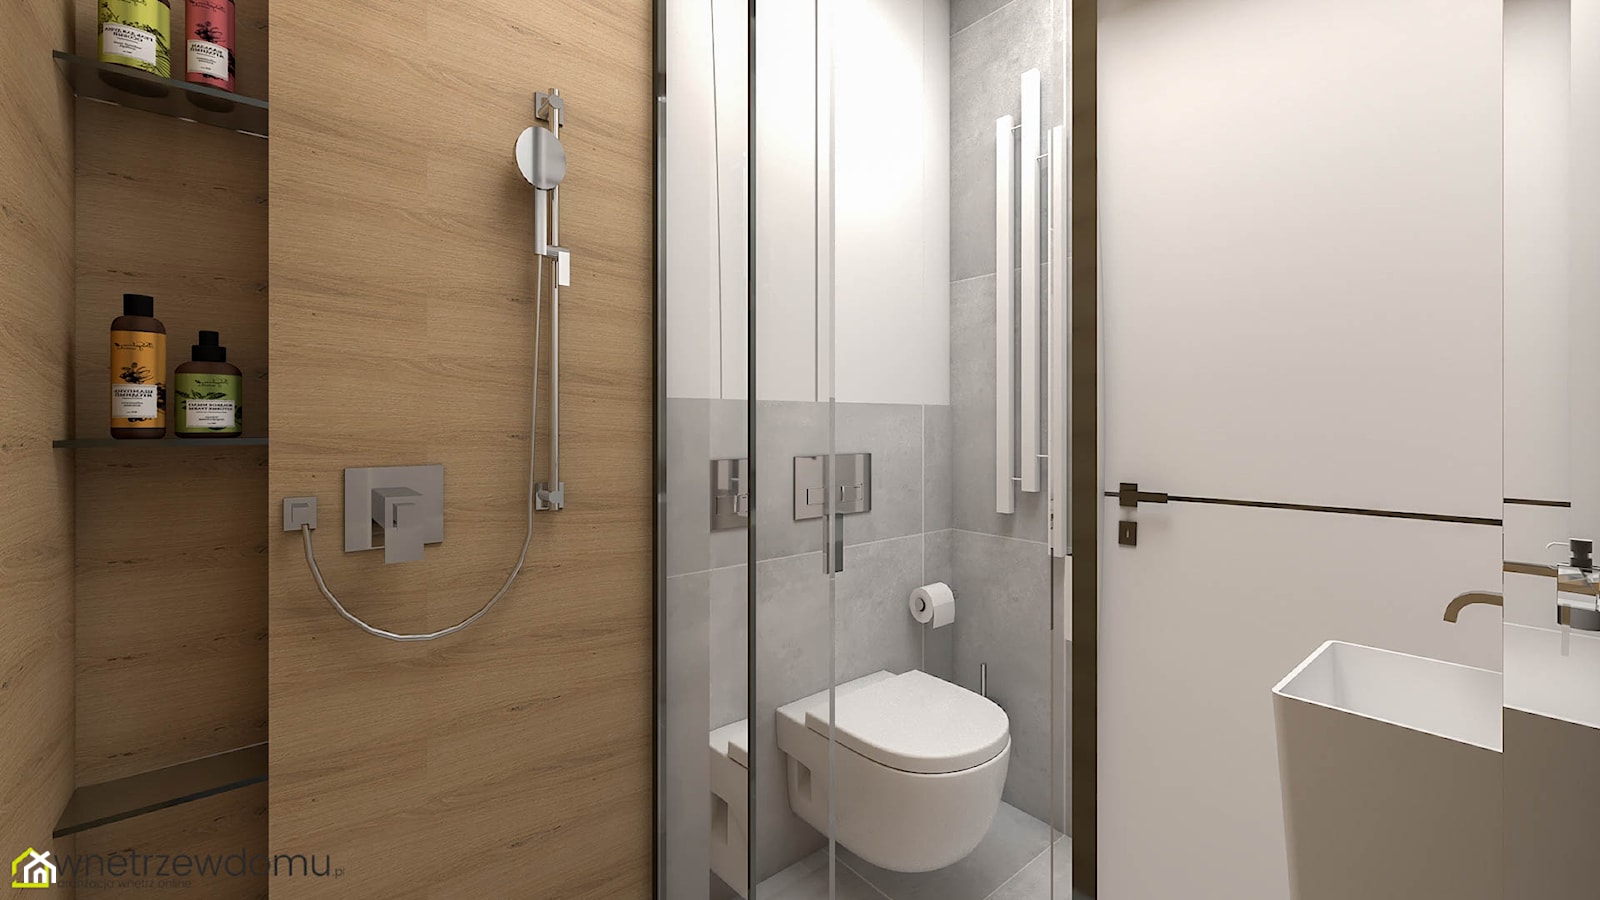 2,5-metrowa łazienka z prysznicem - zdjęcie od wnetrzewdomu - Homebook